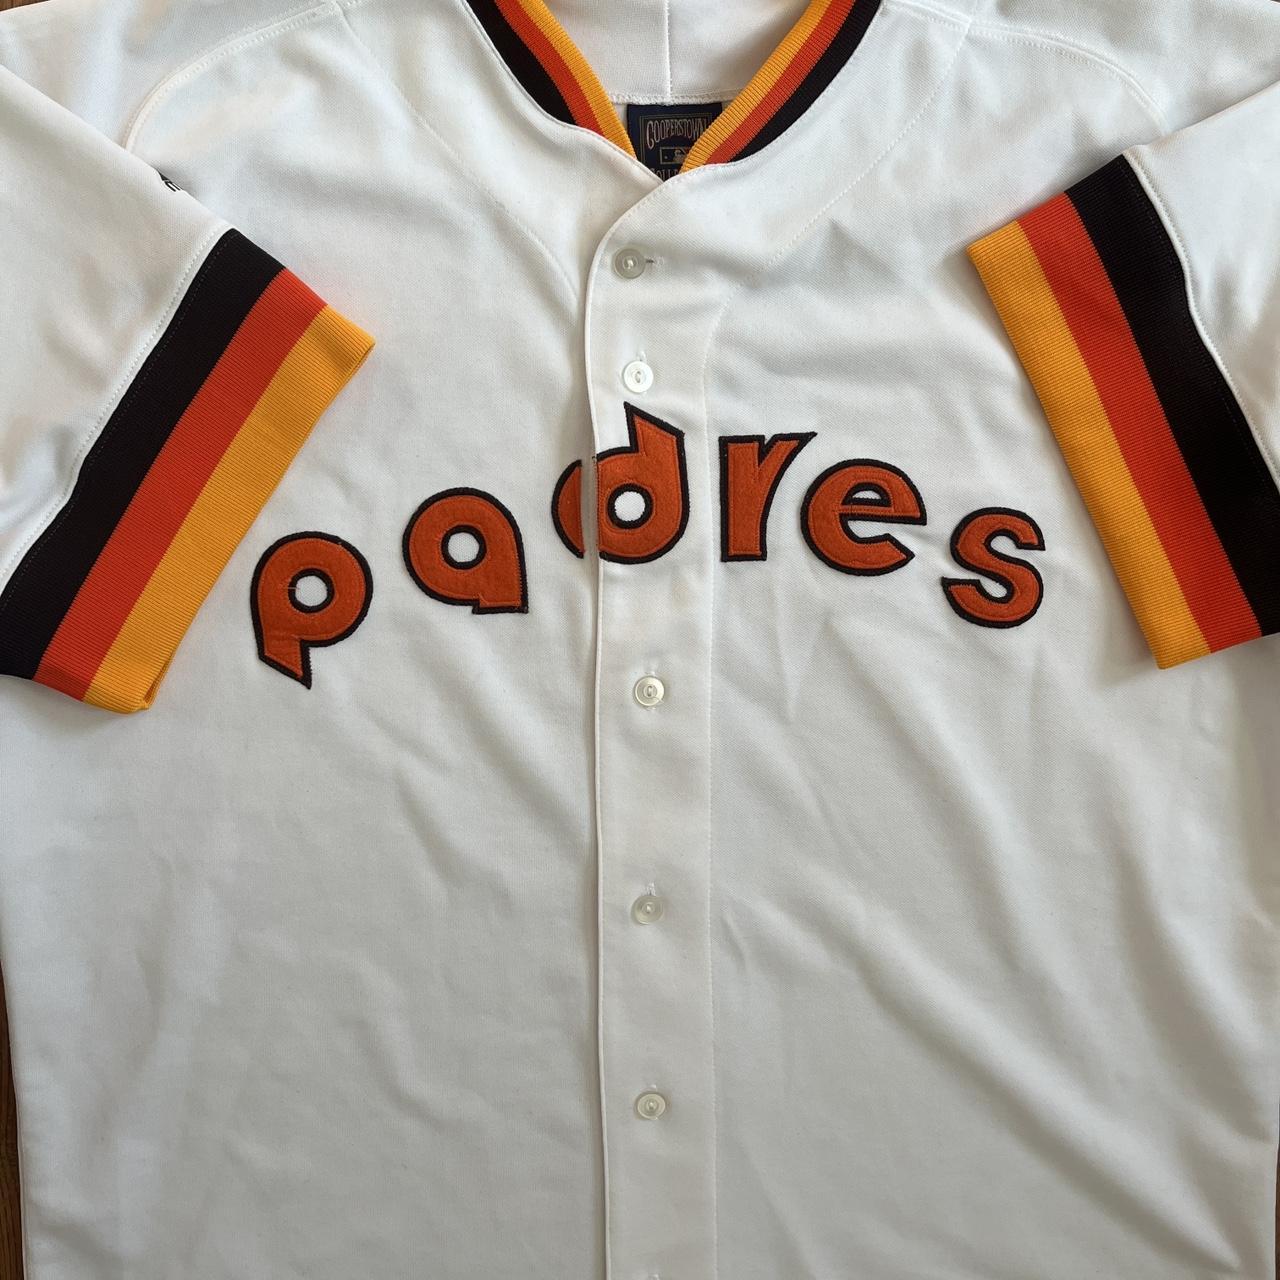 Vintage Padres baseball jersey Cooperstown classic v - Depop